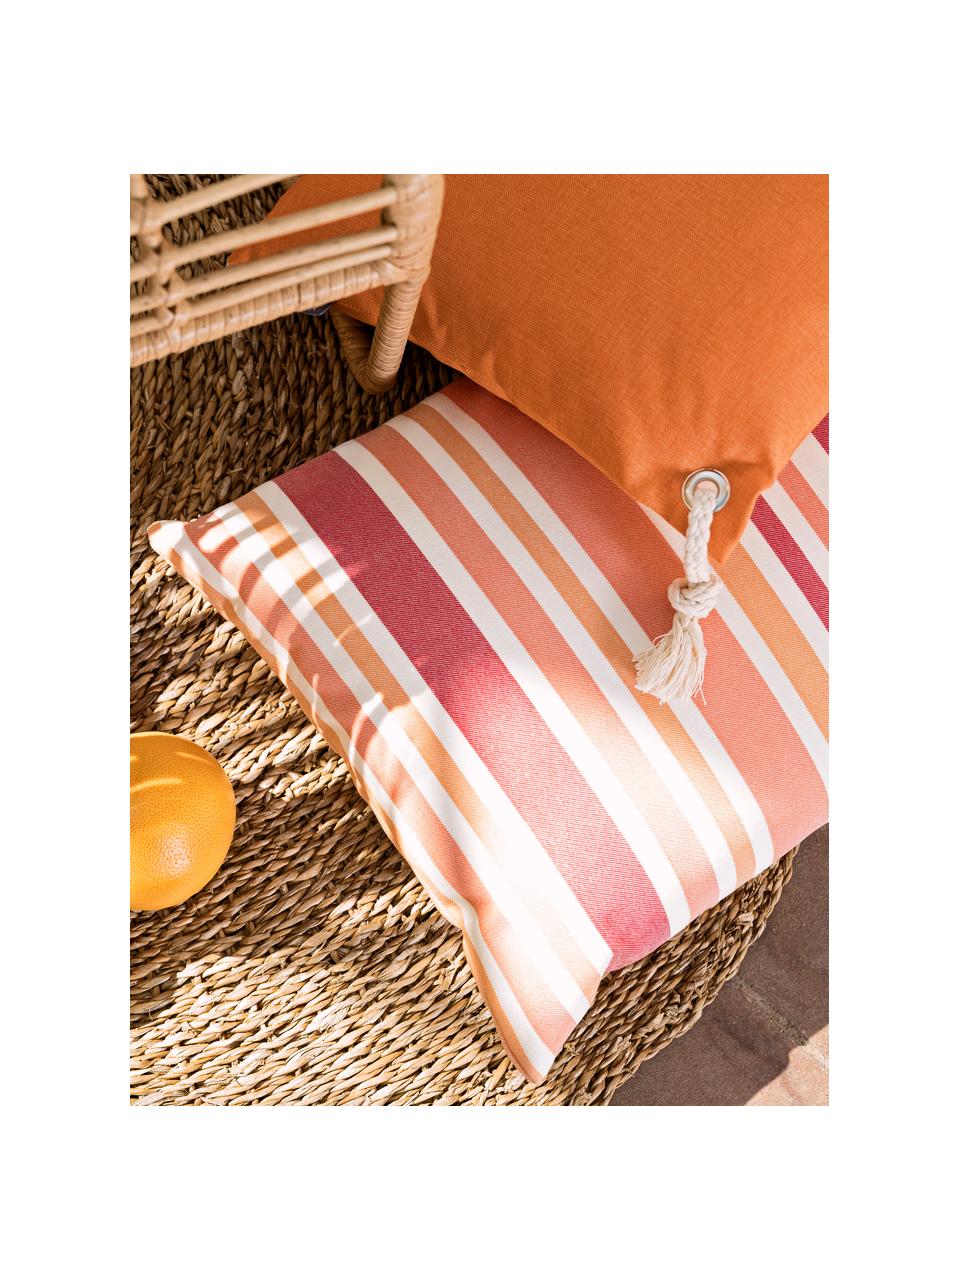 Federa arredo da interno-esterno a righe Marbella, 100% Dralon® poliacrilico, Arancione, bianco, tonalità rosa, Larg. 40 x Lung. 60 cm